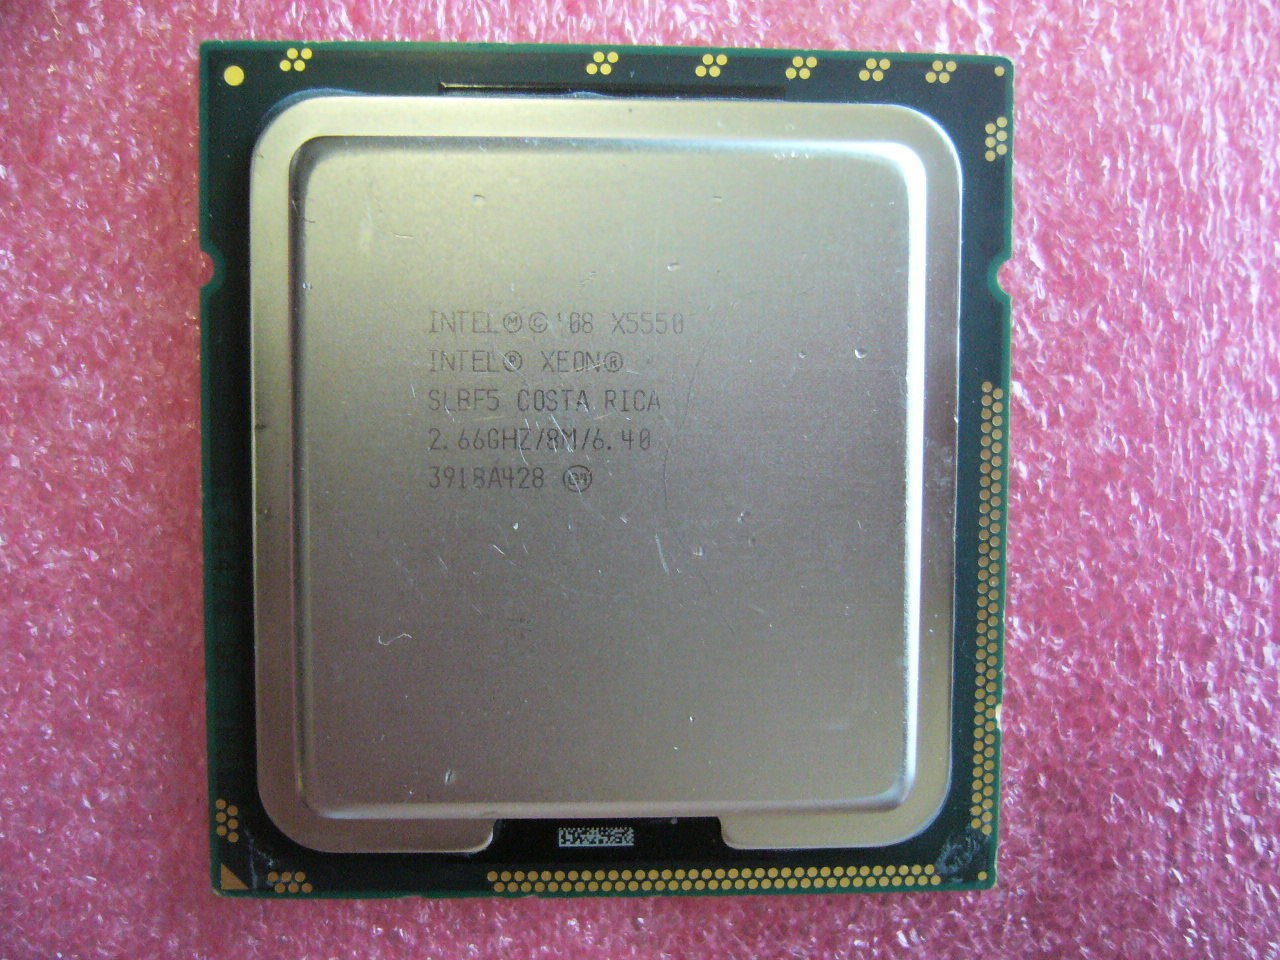 QTY 1x INTEL Quad-Cores CPU X5550 2.66GHZ/8MB 6.4GT/s QPI LGA1366 SLBF5 - Click Image to Close